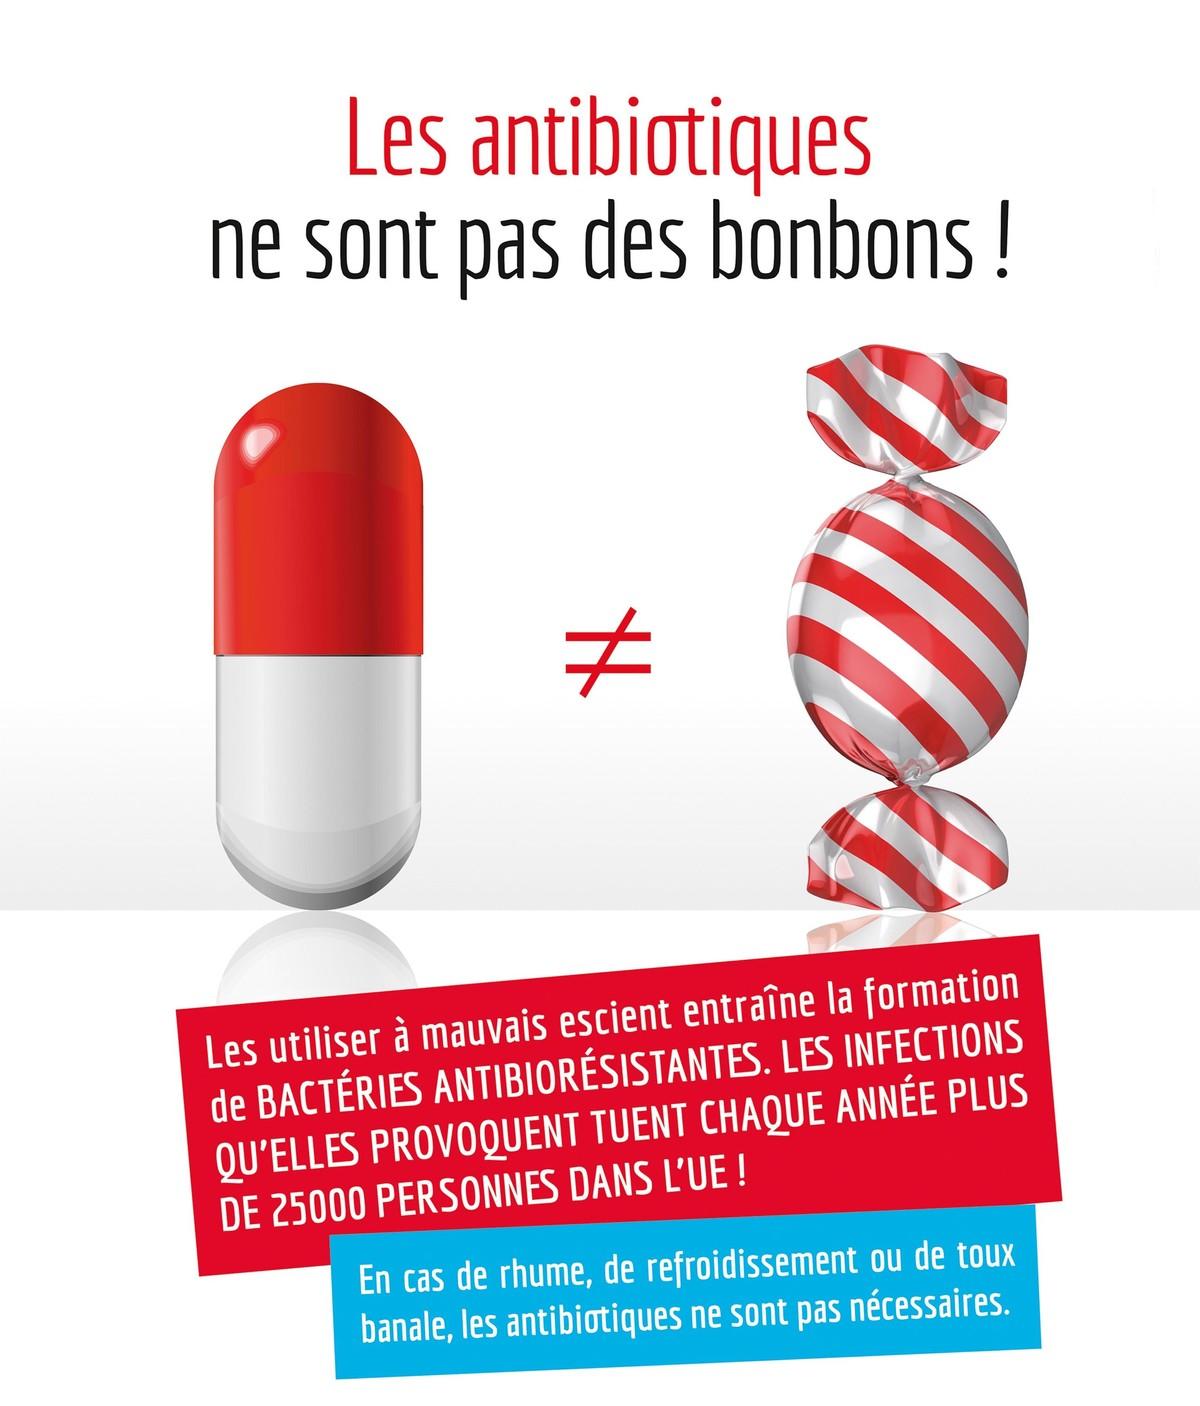 Une campagne pour la bonne utilisation des antibiotiques au Luxembourg.